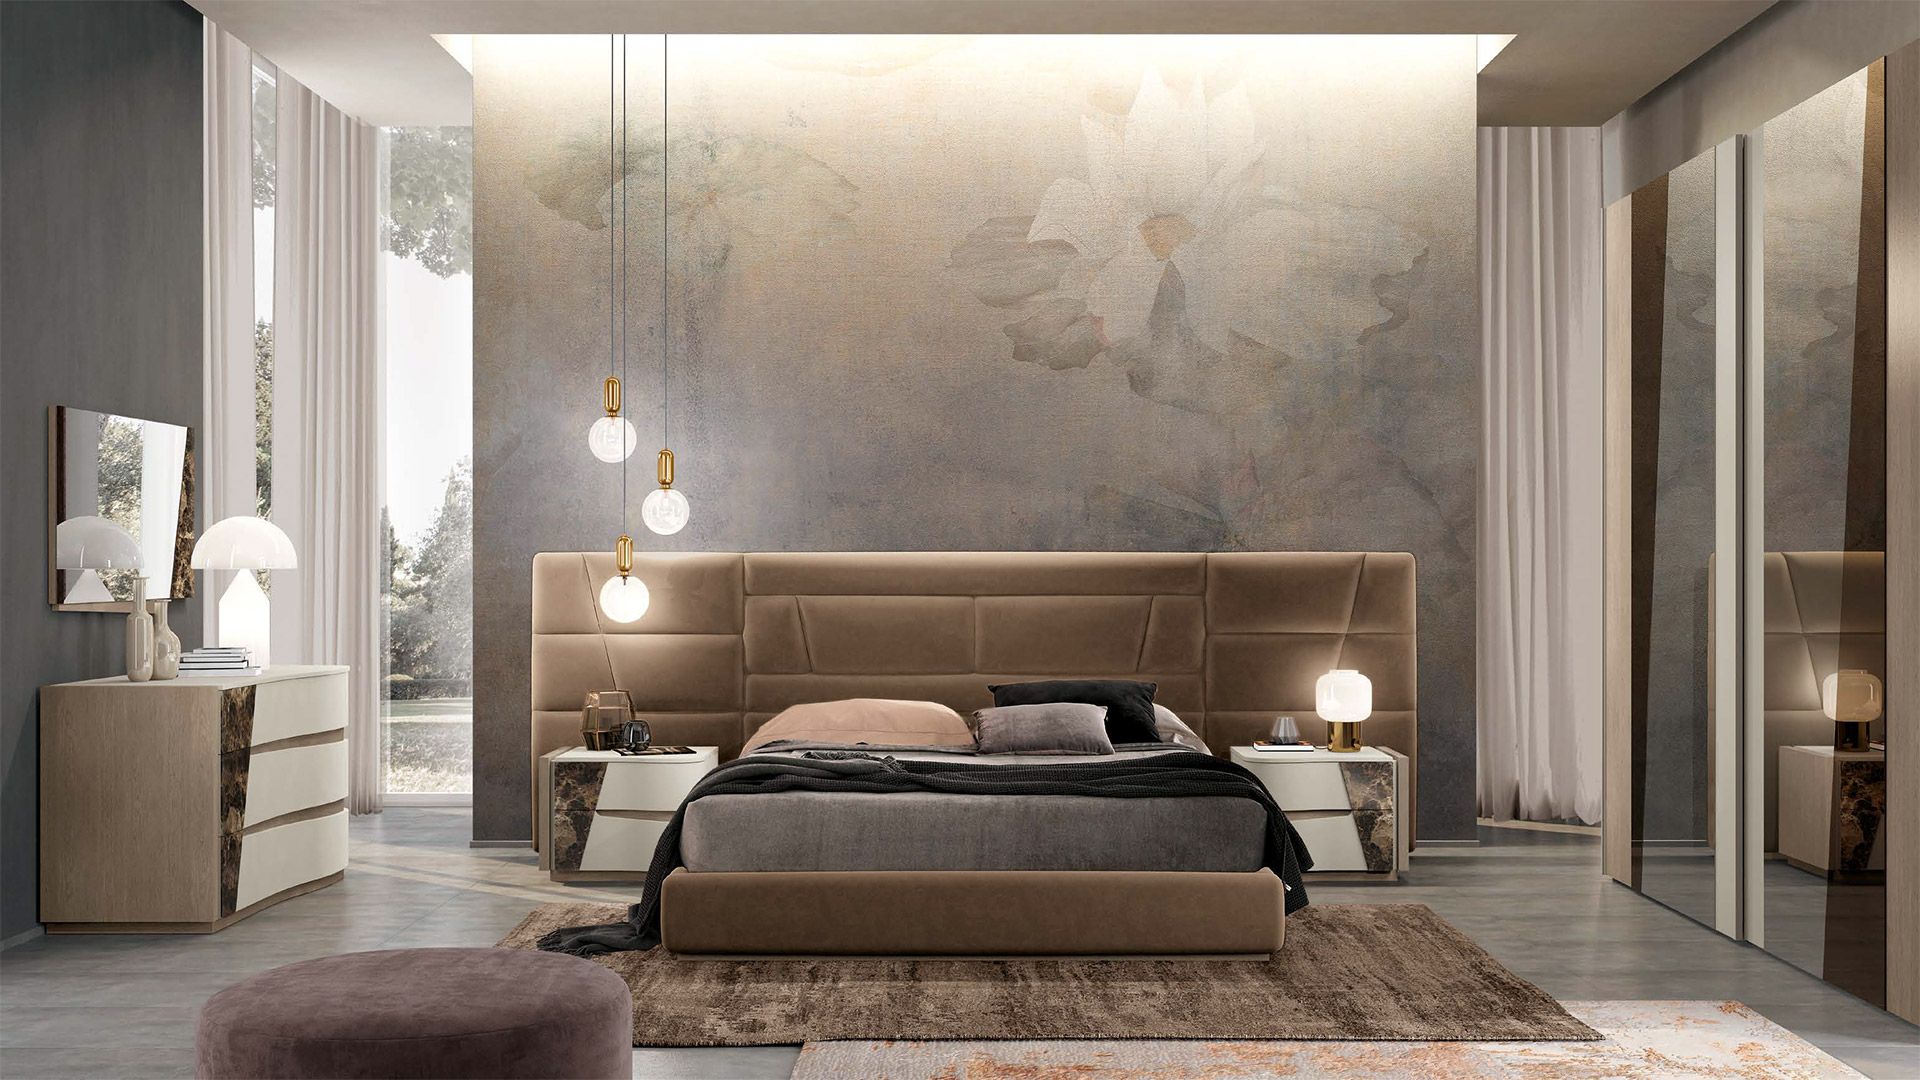 Graniti Vicentia - Exquisite Bedroom Furniture | Graniti Vicentia